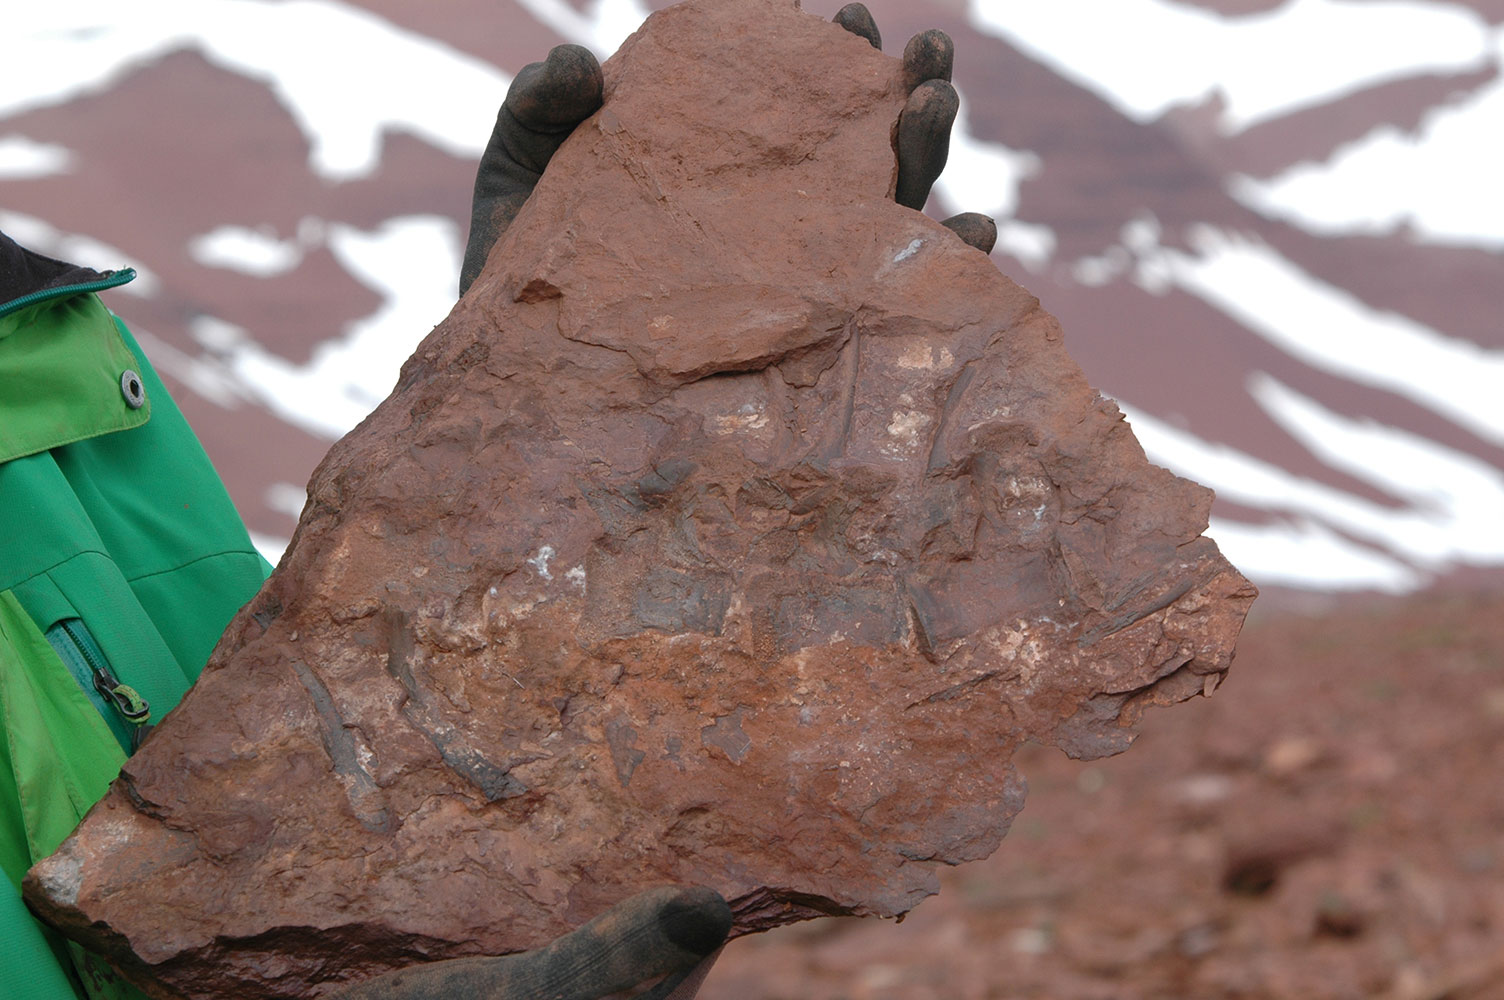 Fotografi af muddersten med ryghvirvler fra en tidlig dinosaur